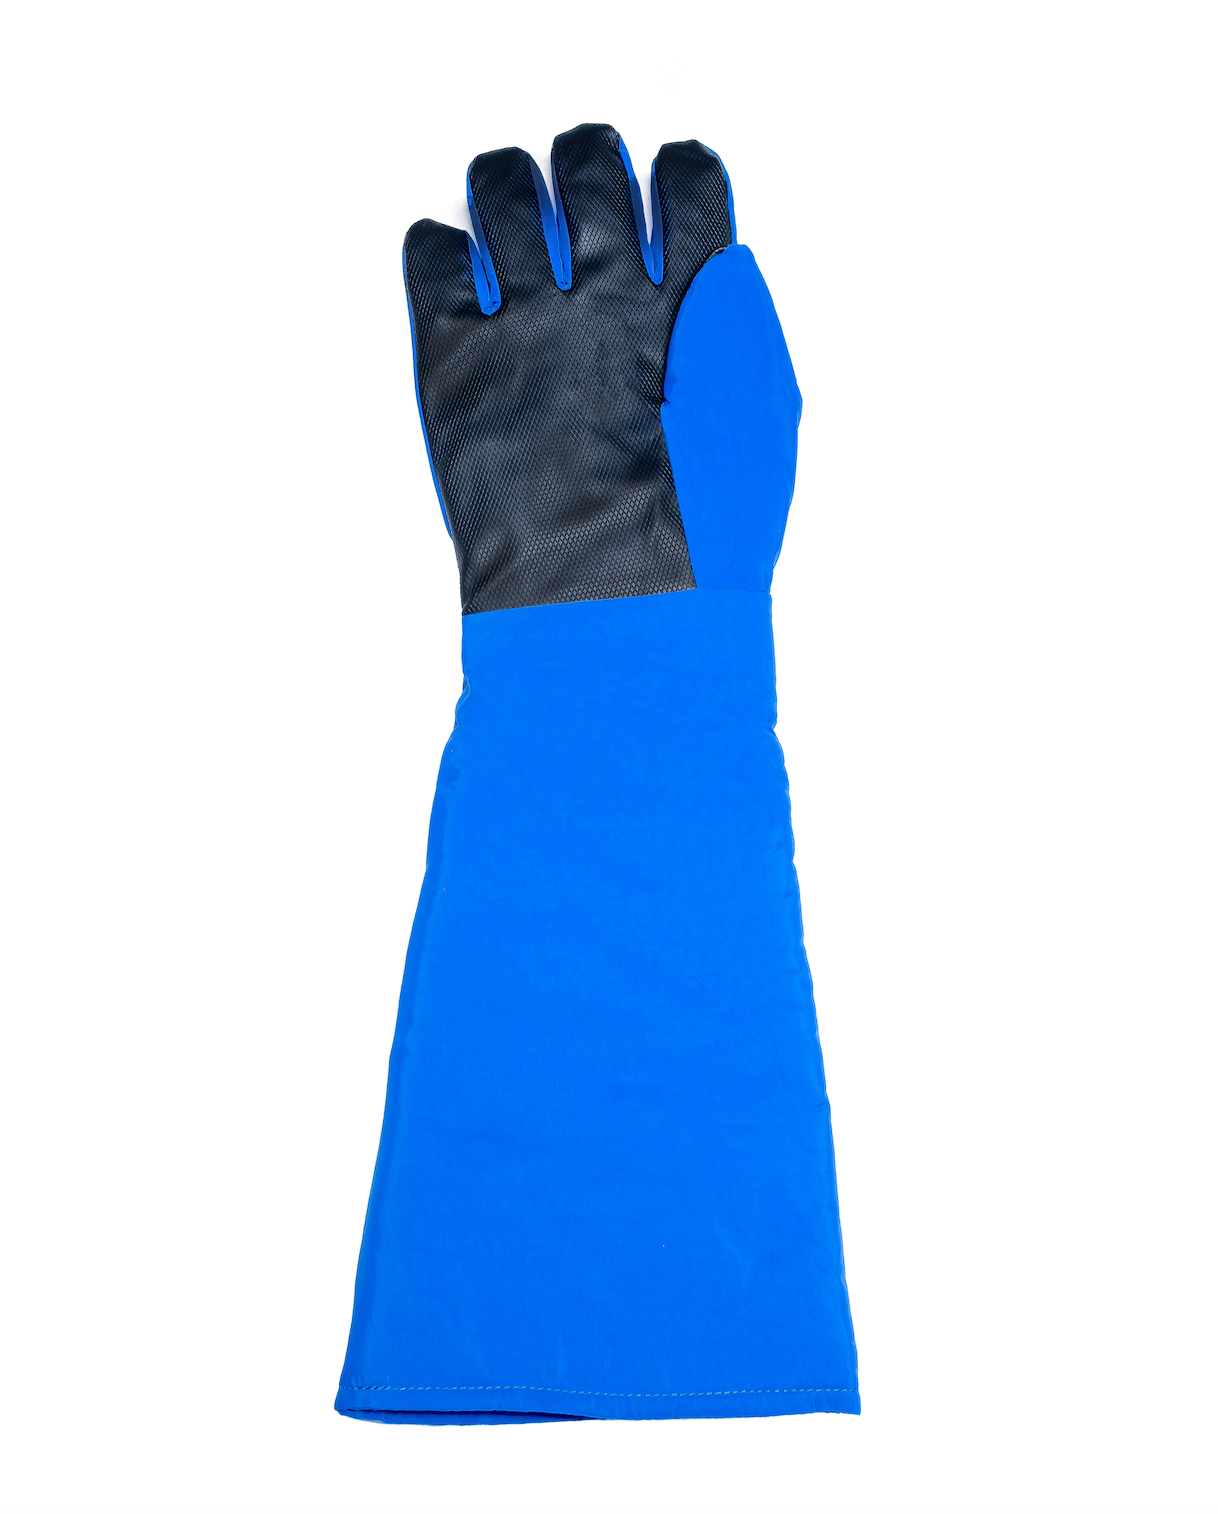 waterproof cryo grip gloves elbow